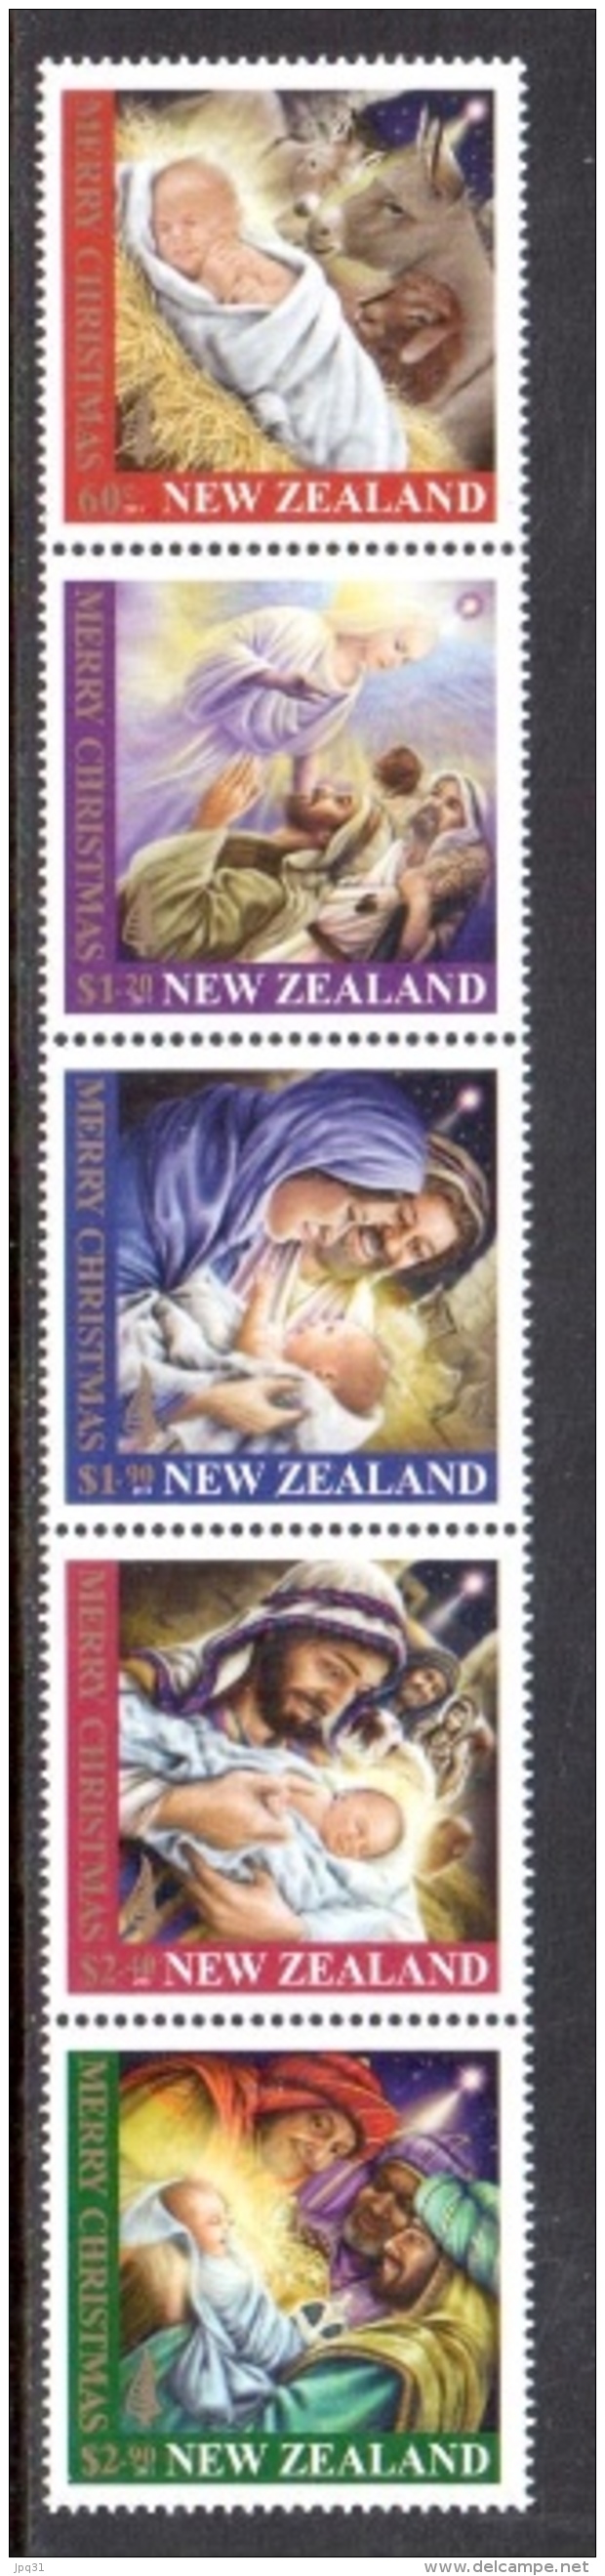 Nvlle Zélande - Noël 2011 - Tirage Spécial Loyalty Reward ** - Neufs